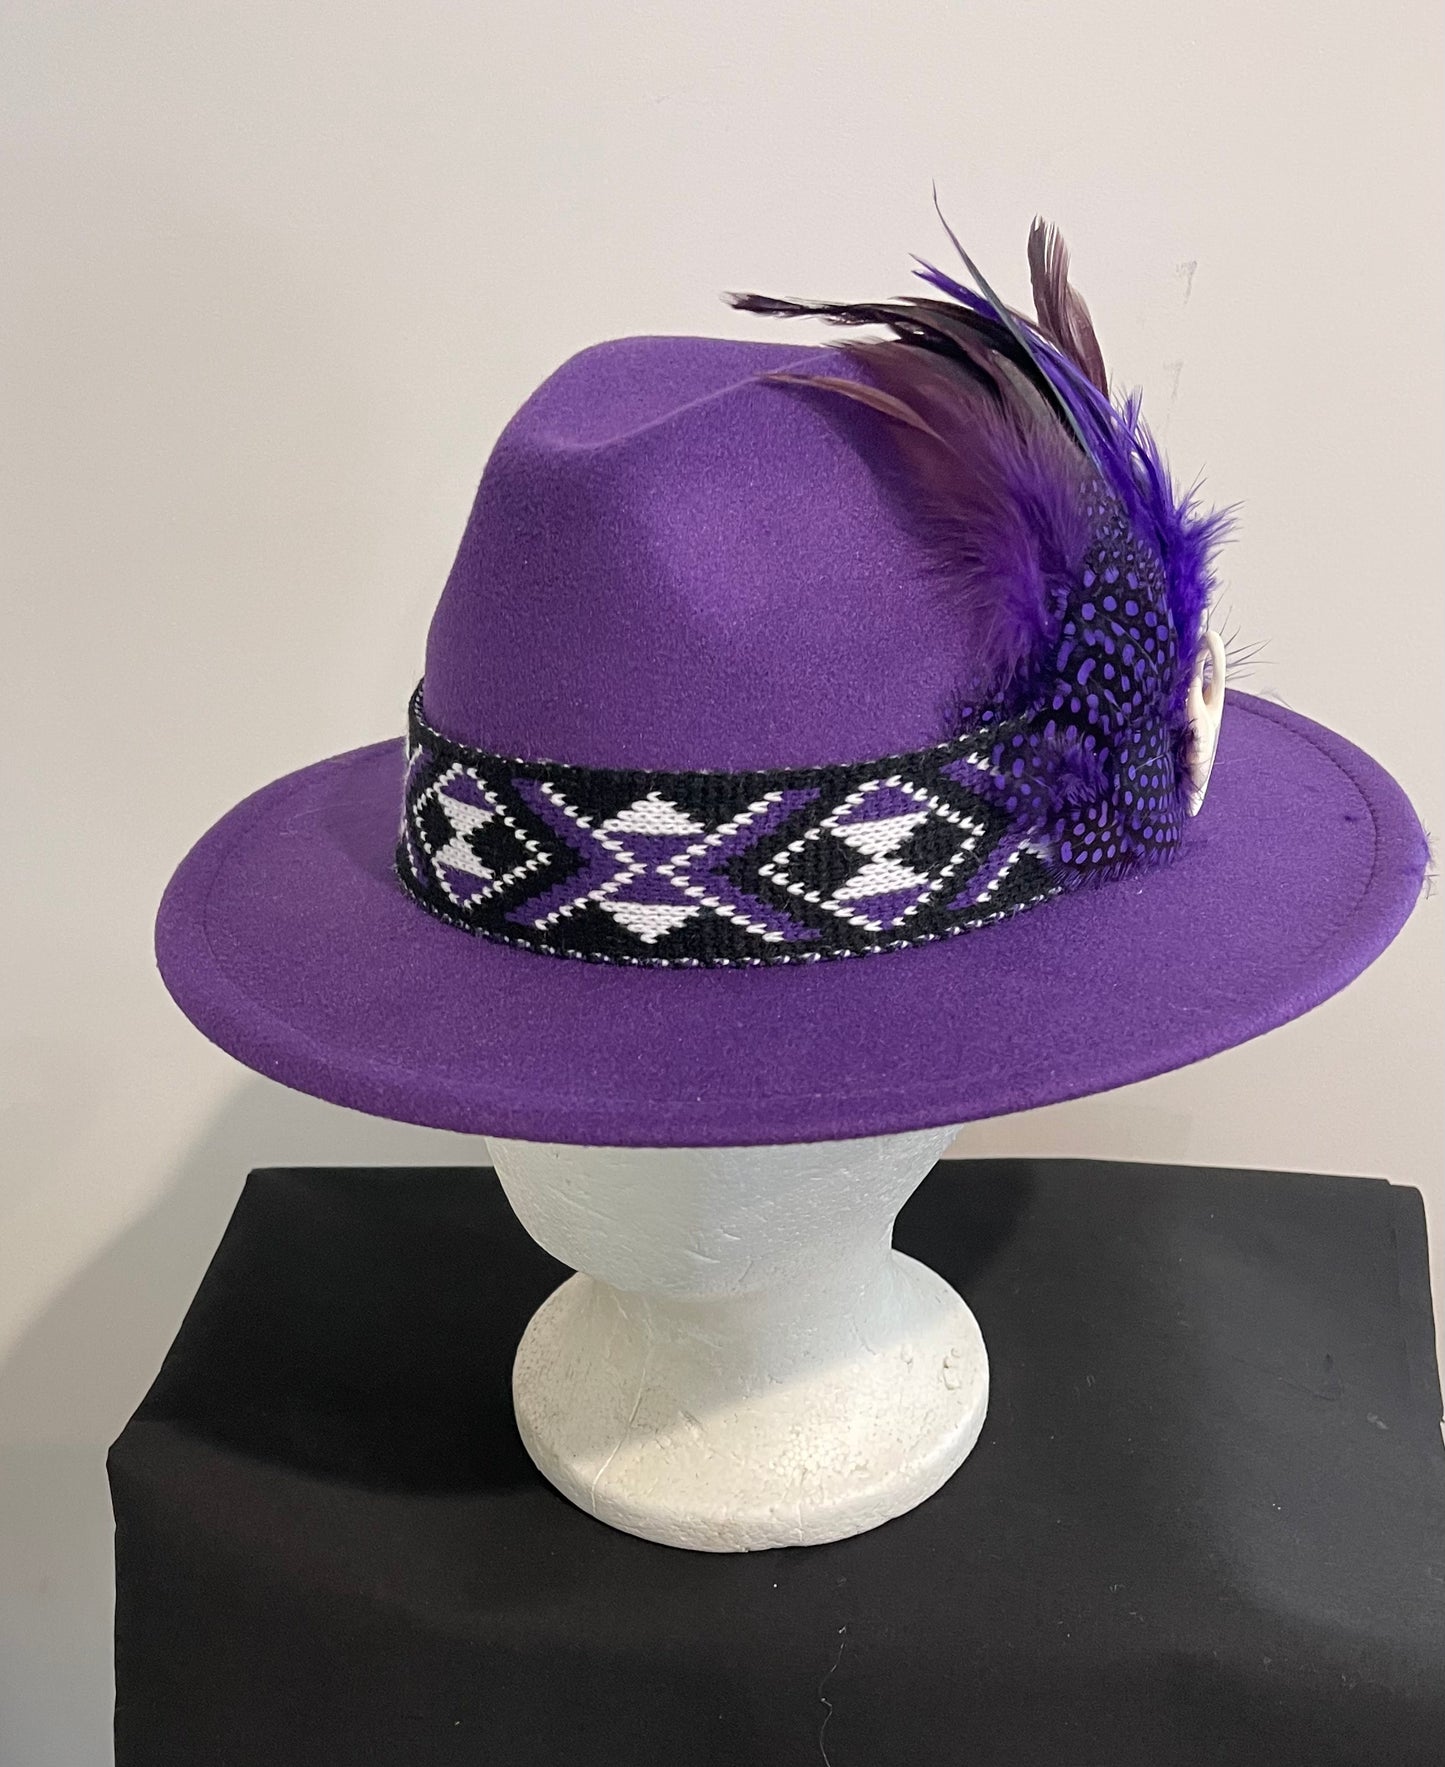 Potae - Purple Fedora Felt Hat